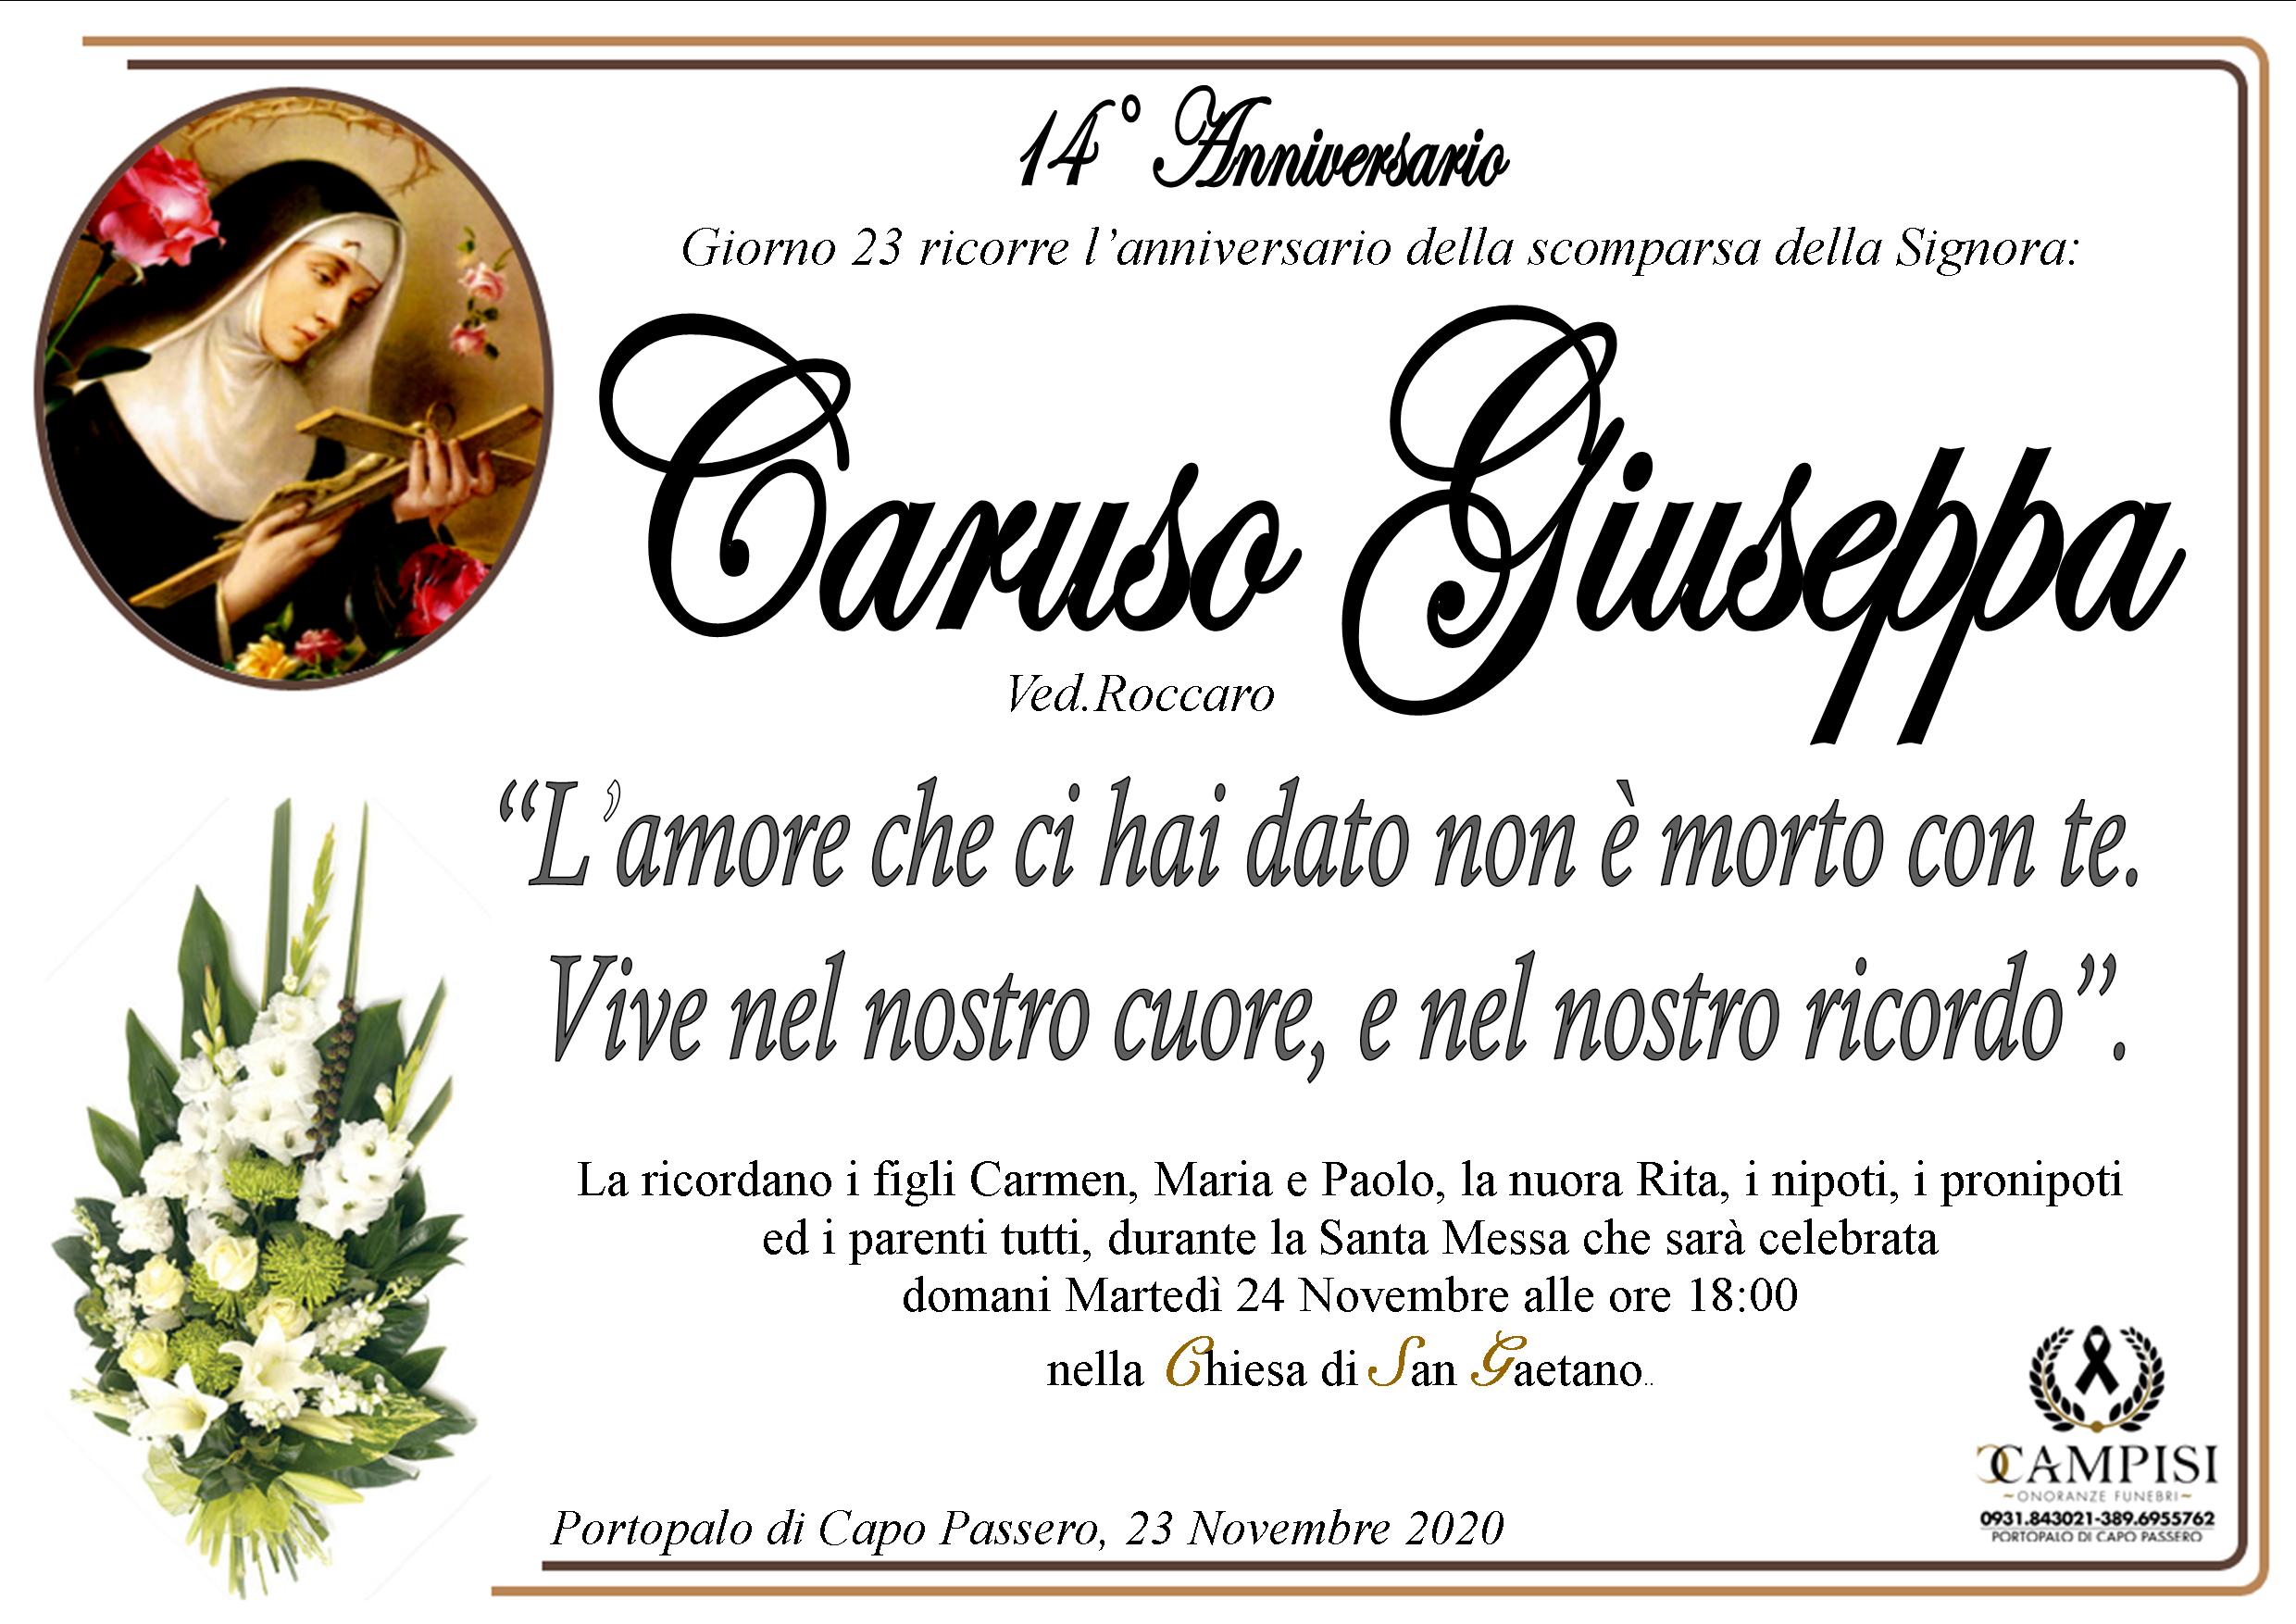 Caruso Giuseppa